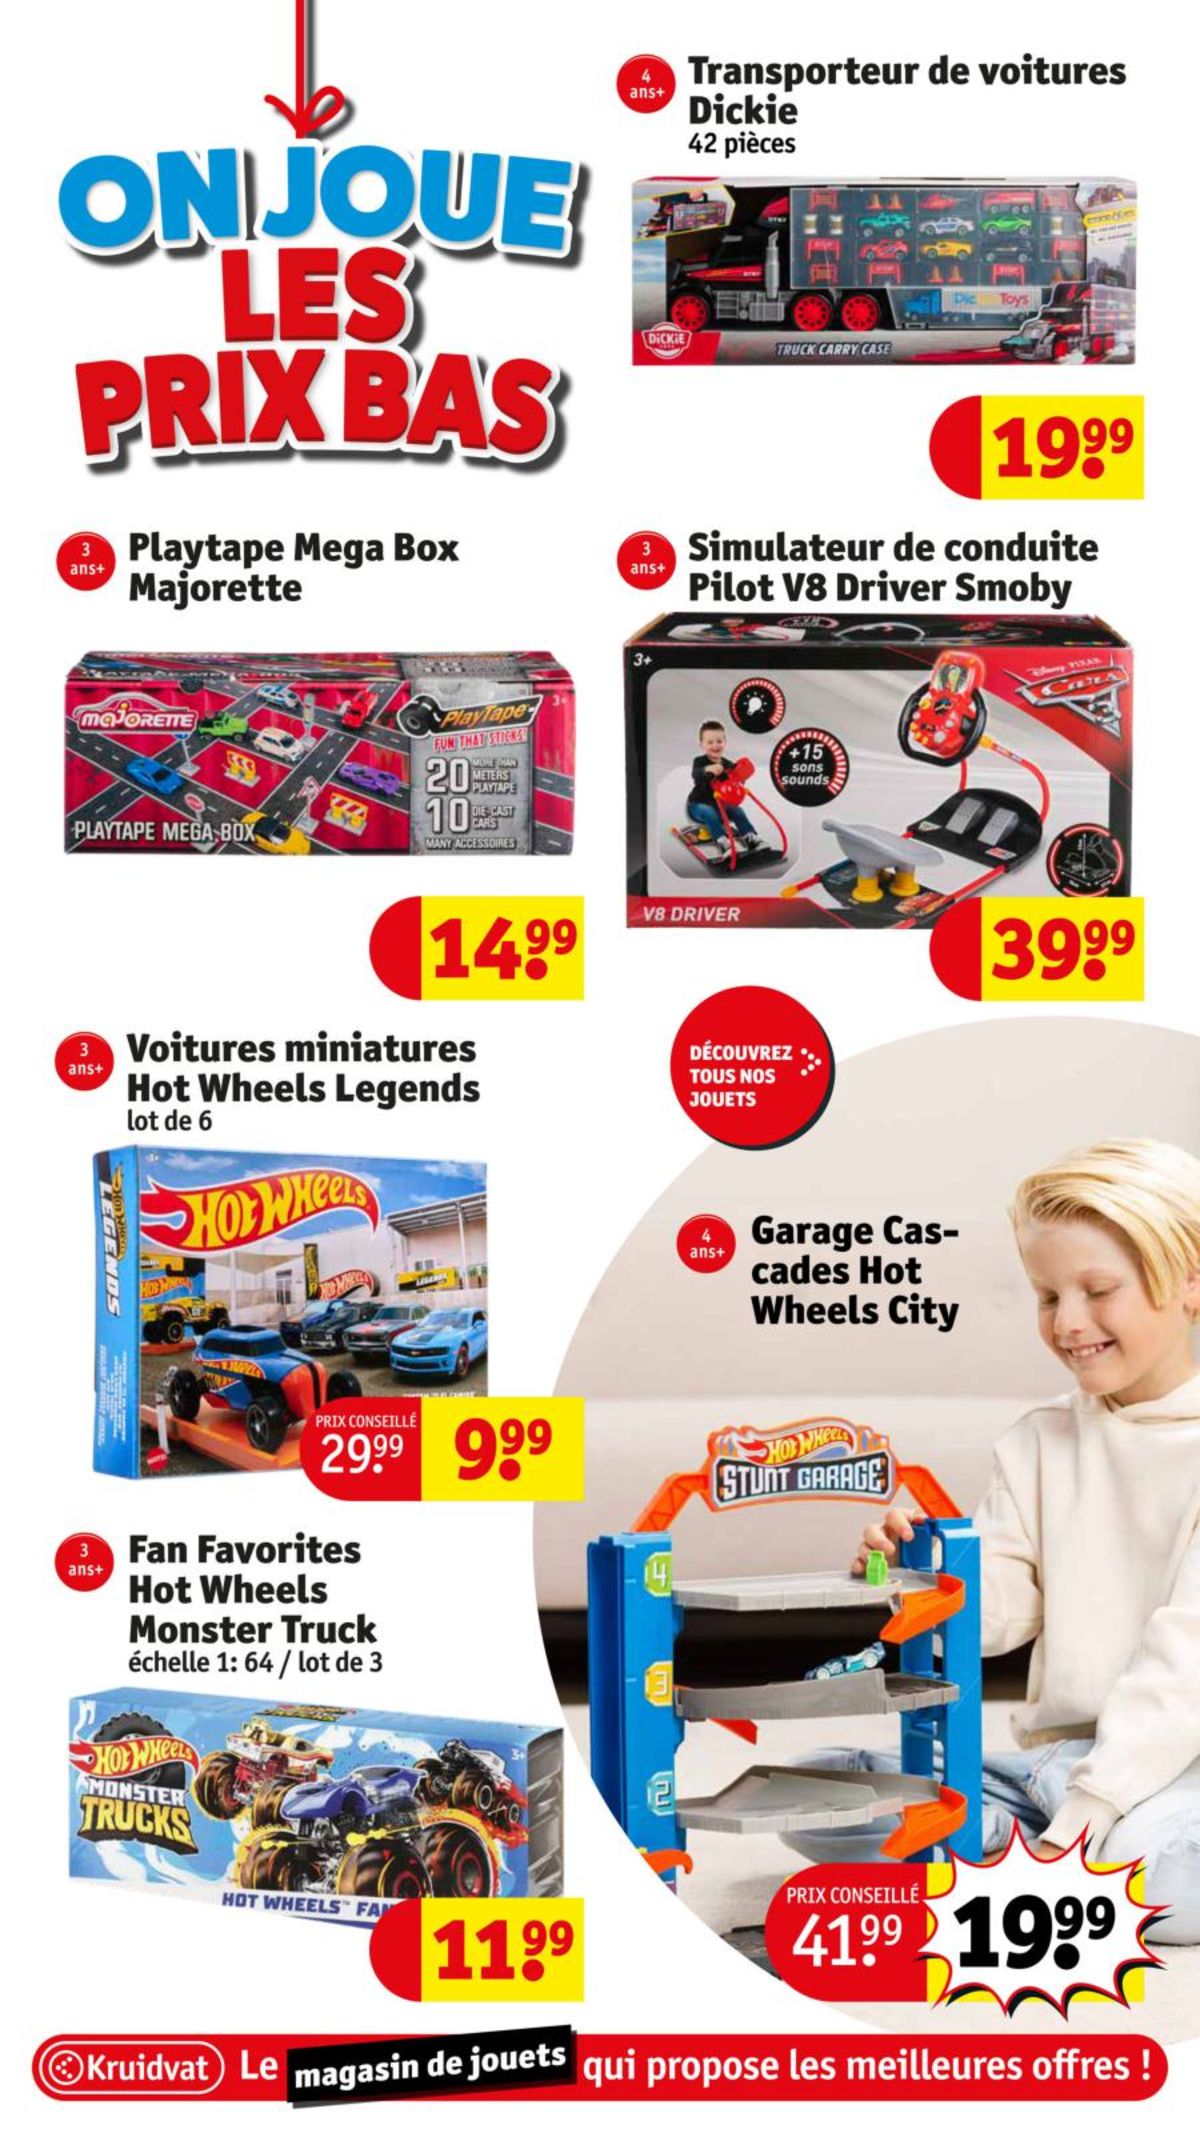 Catalogue Le magasin de jouets aux meilleures offres !, page 00014